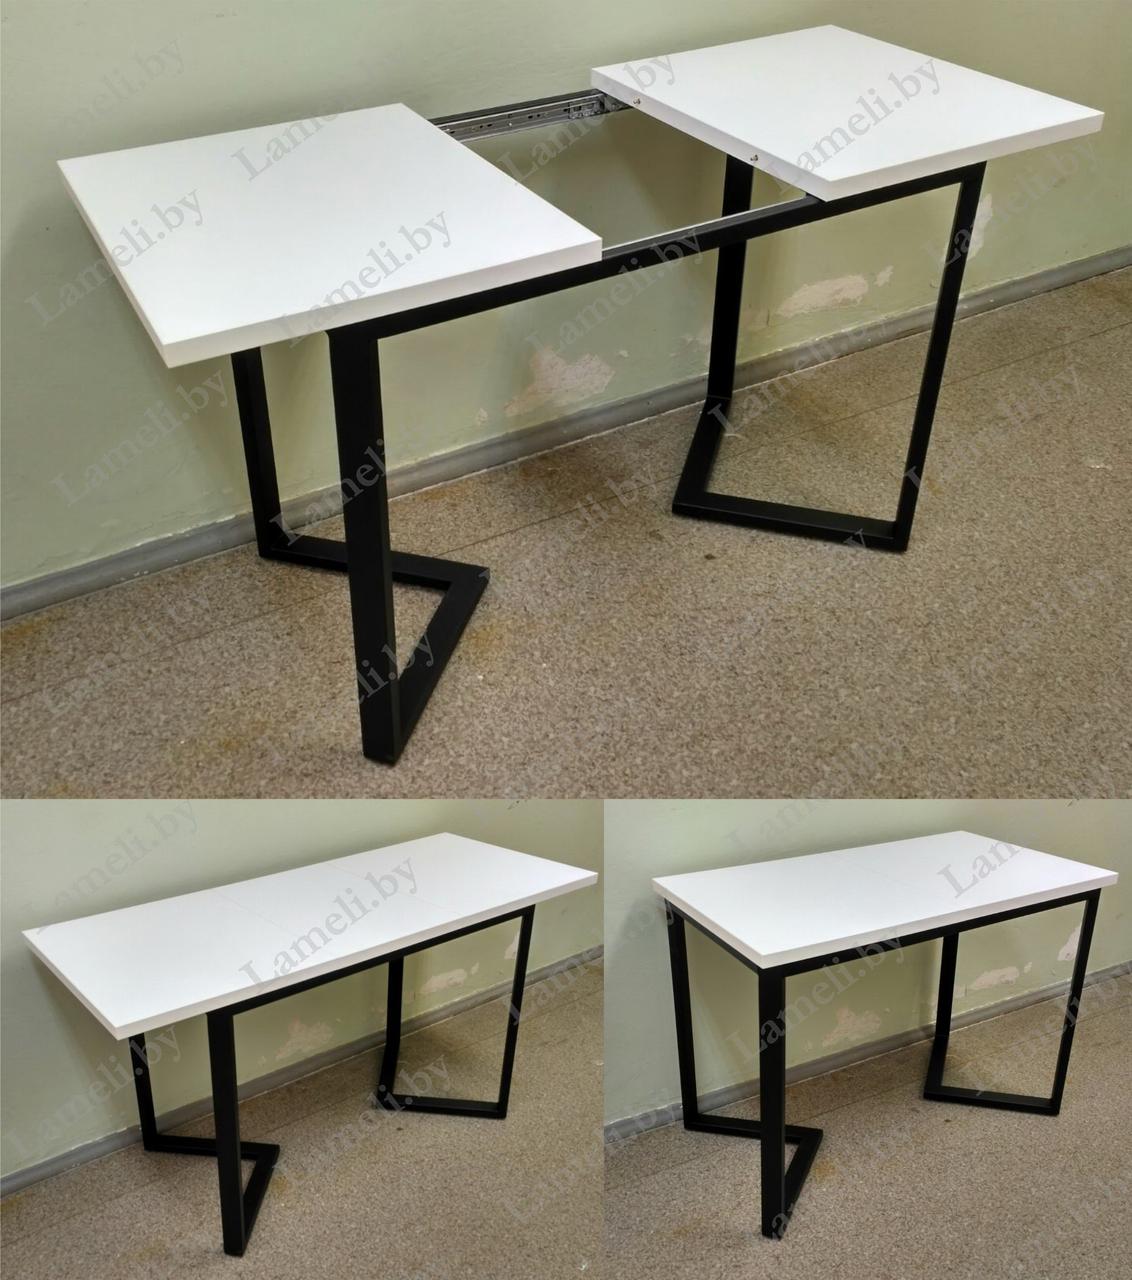 РАЗДВИЖНОЙ стол из массива дуба, ЛДСП или постформинга на подстолье серии "ZO". ЛЮБОЙ размер и цвет.